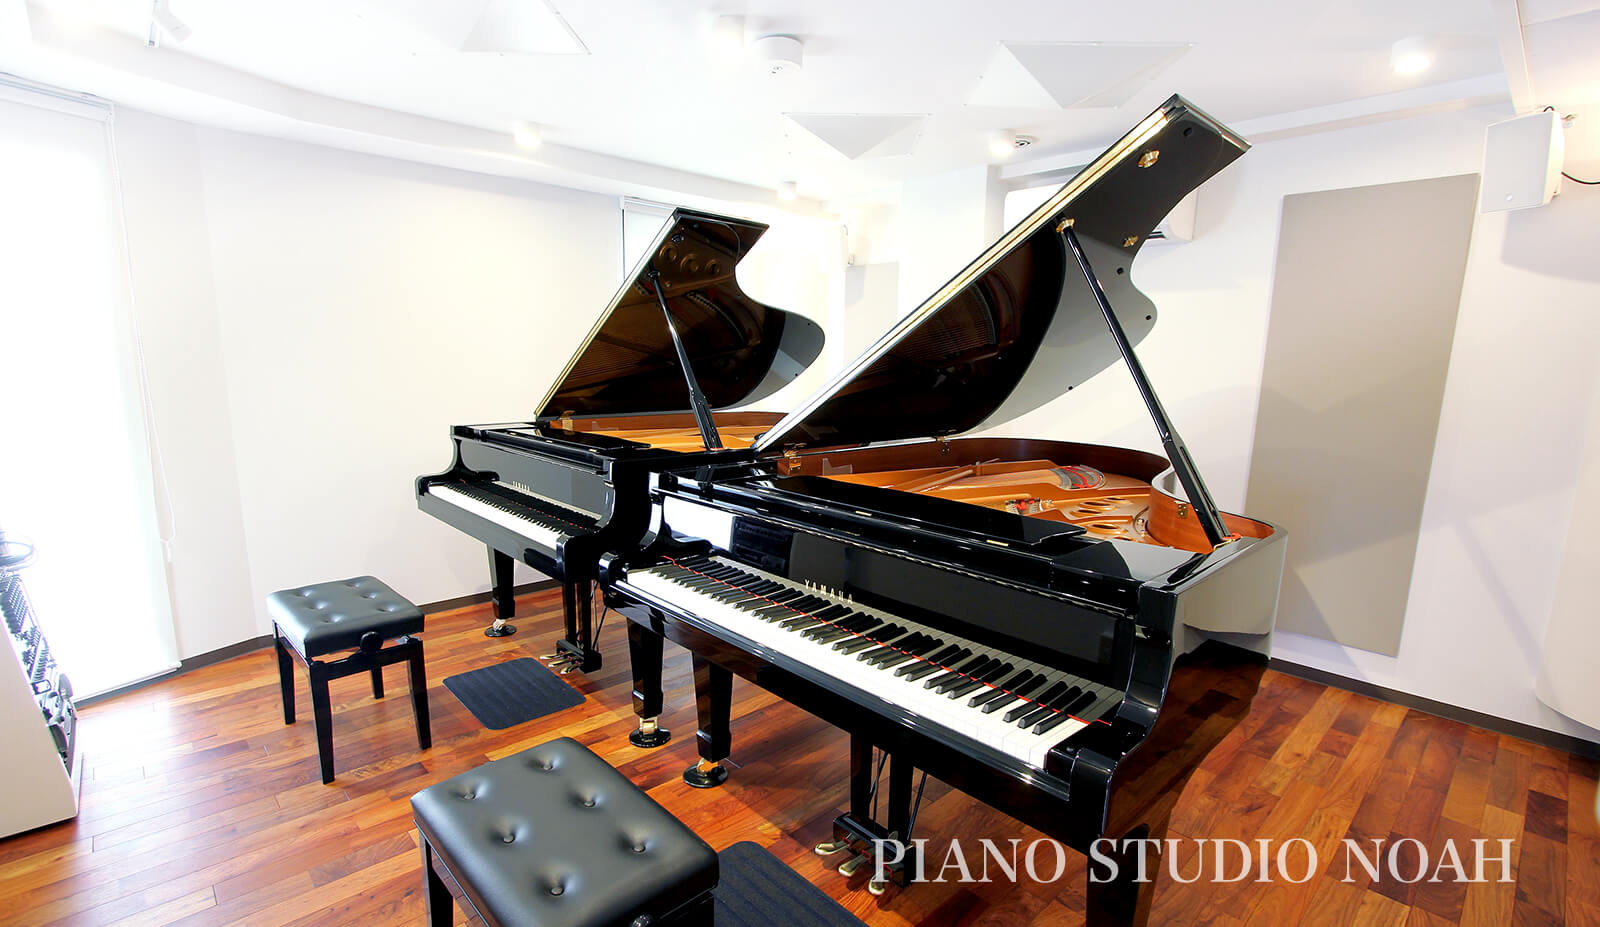 ピアノ練習スタジオ Piano Studio Noah 生ピアノ常設 最高のリハーサル環境